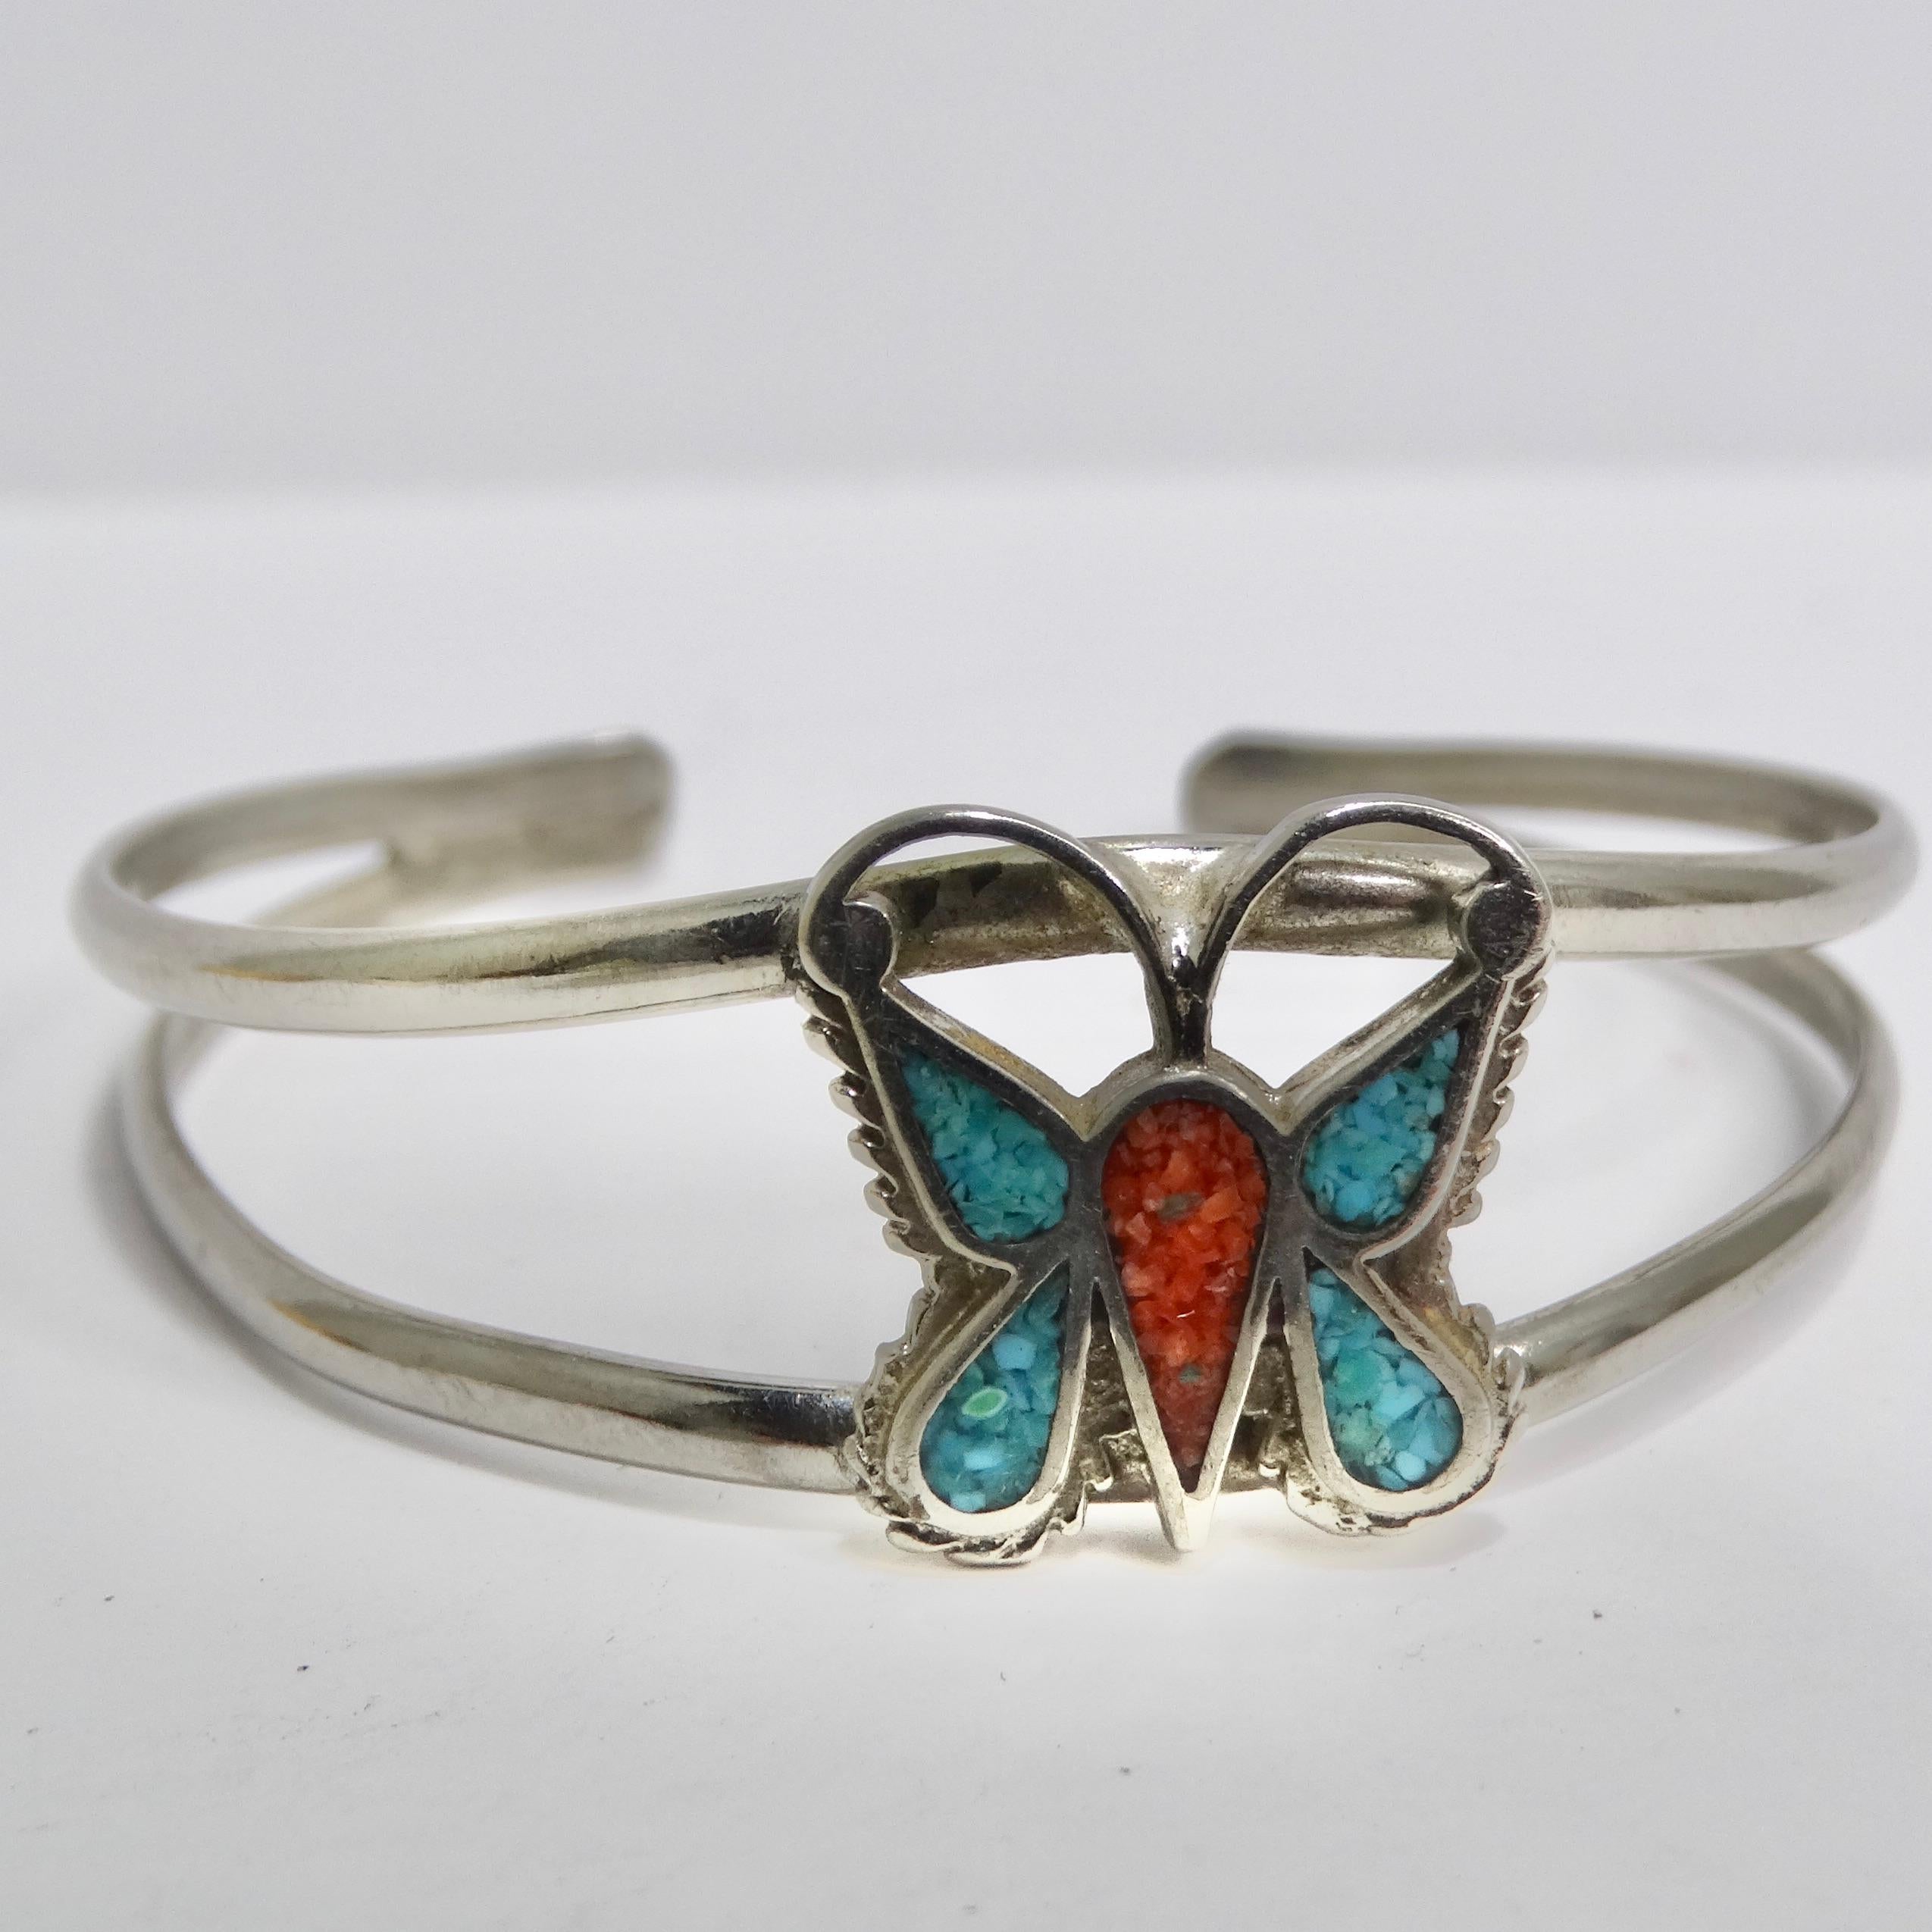 Voici une pièce intemporelle de l'art amérindien : le bracelet manchette papillon en argent Navajo 1950. Ce bracelet exquis témoigne du savoir-faire artisanal et de l'importance culturelle des bijoux Navajo, et ne manquera pas de vous séduire.